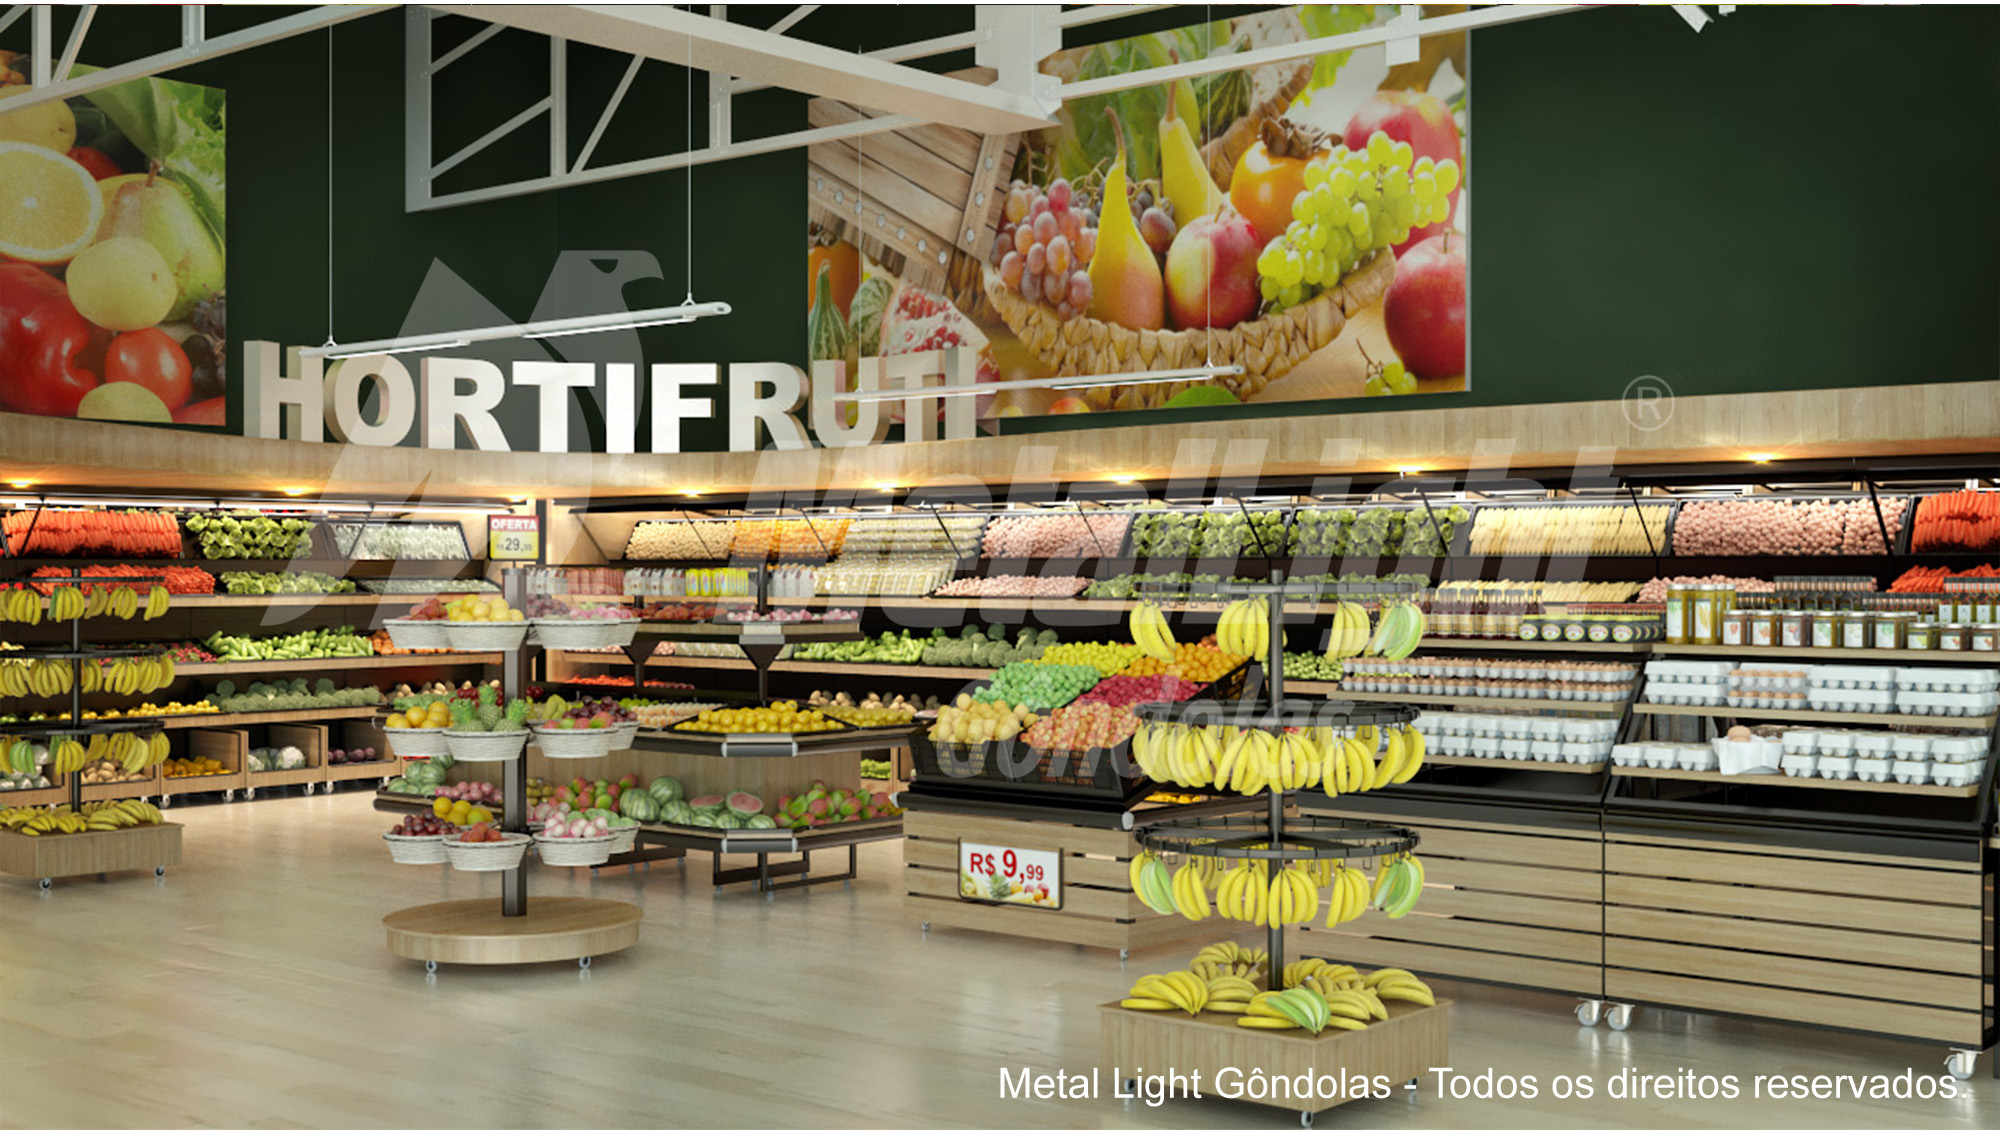 4-expositor-verduras-hortifruti-frutas-frutaria-verdurao-metal-light-gondolas-varejo-supermercado-faturamento-exposicao-vendas-mercado-receita-aumento-menor-custo-855162_g